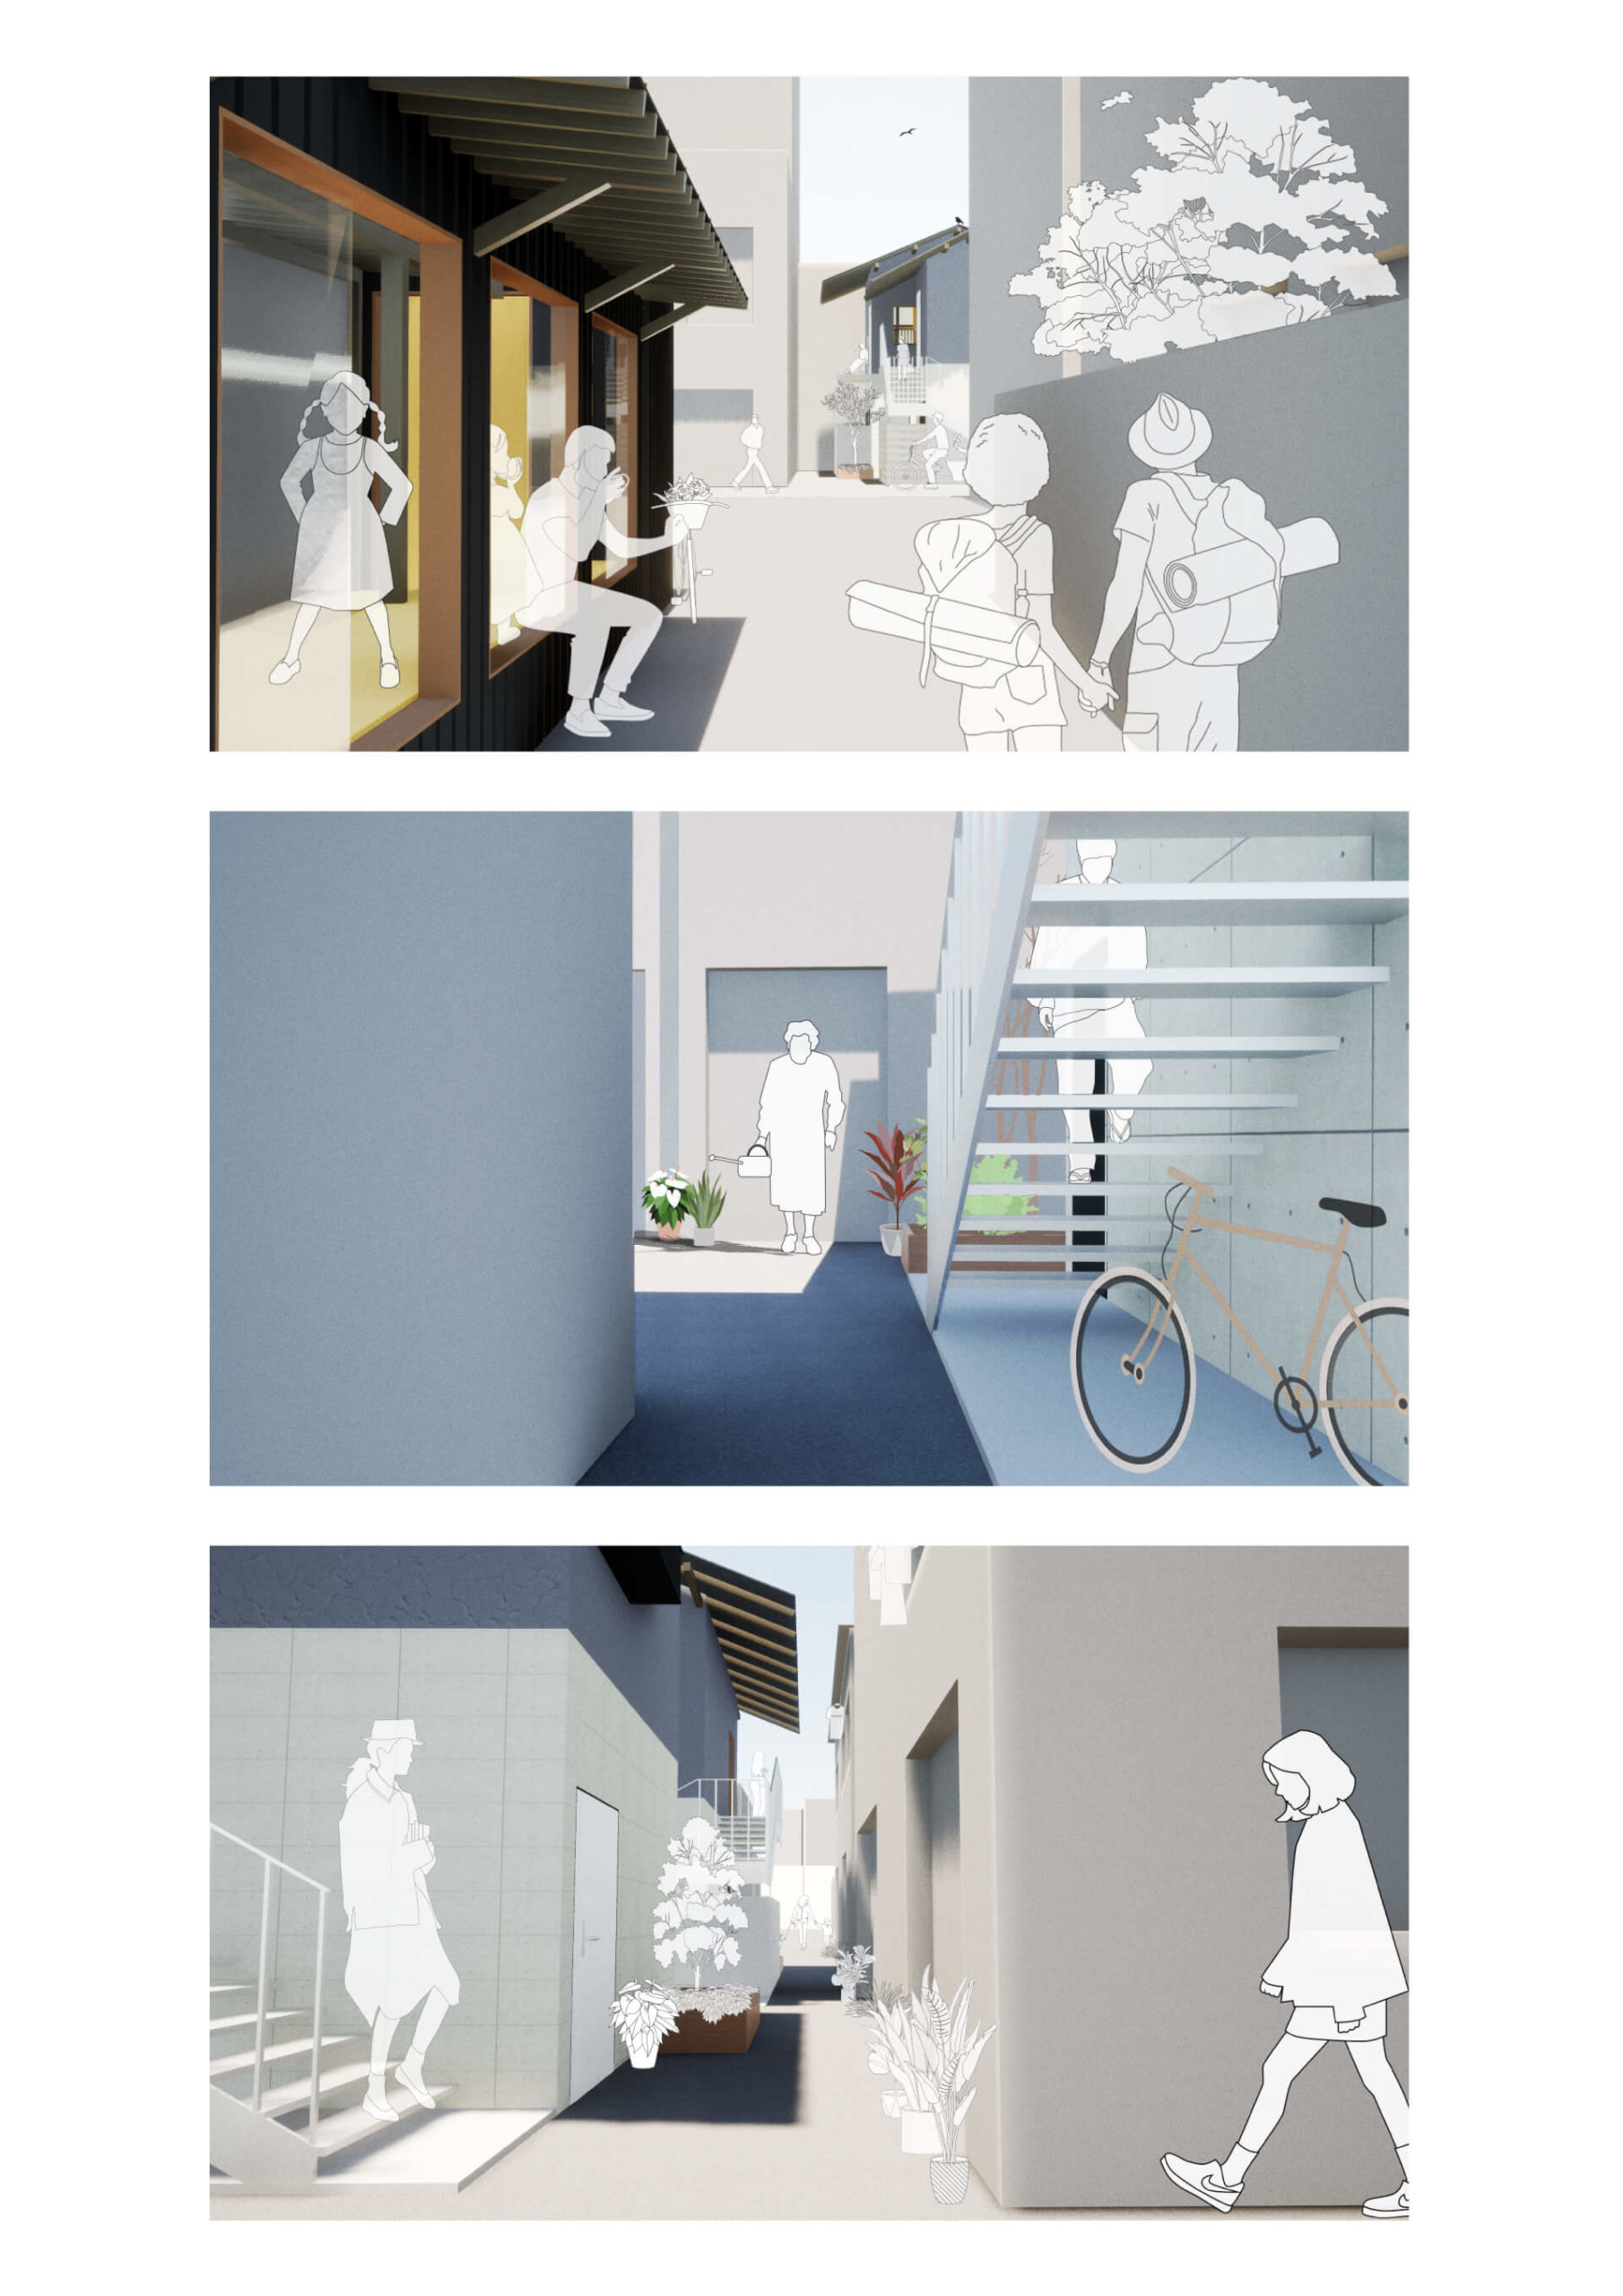 分散型宿泊施設による街のデザイン手法の提案-18